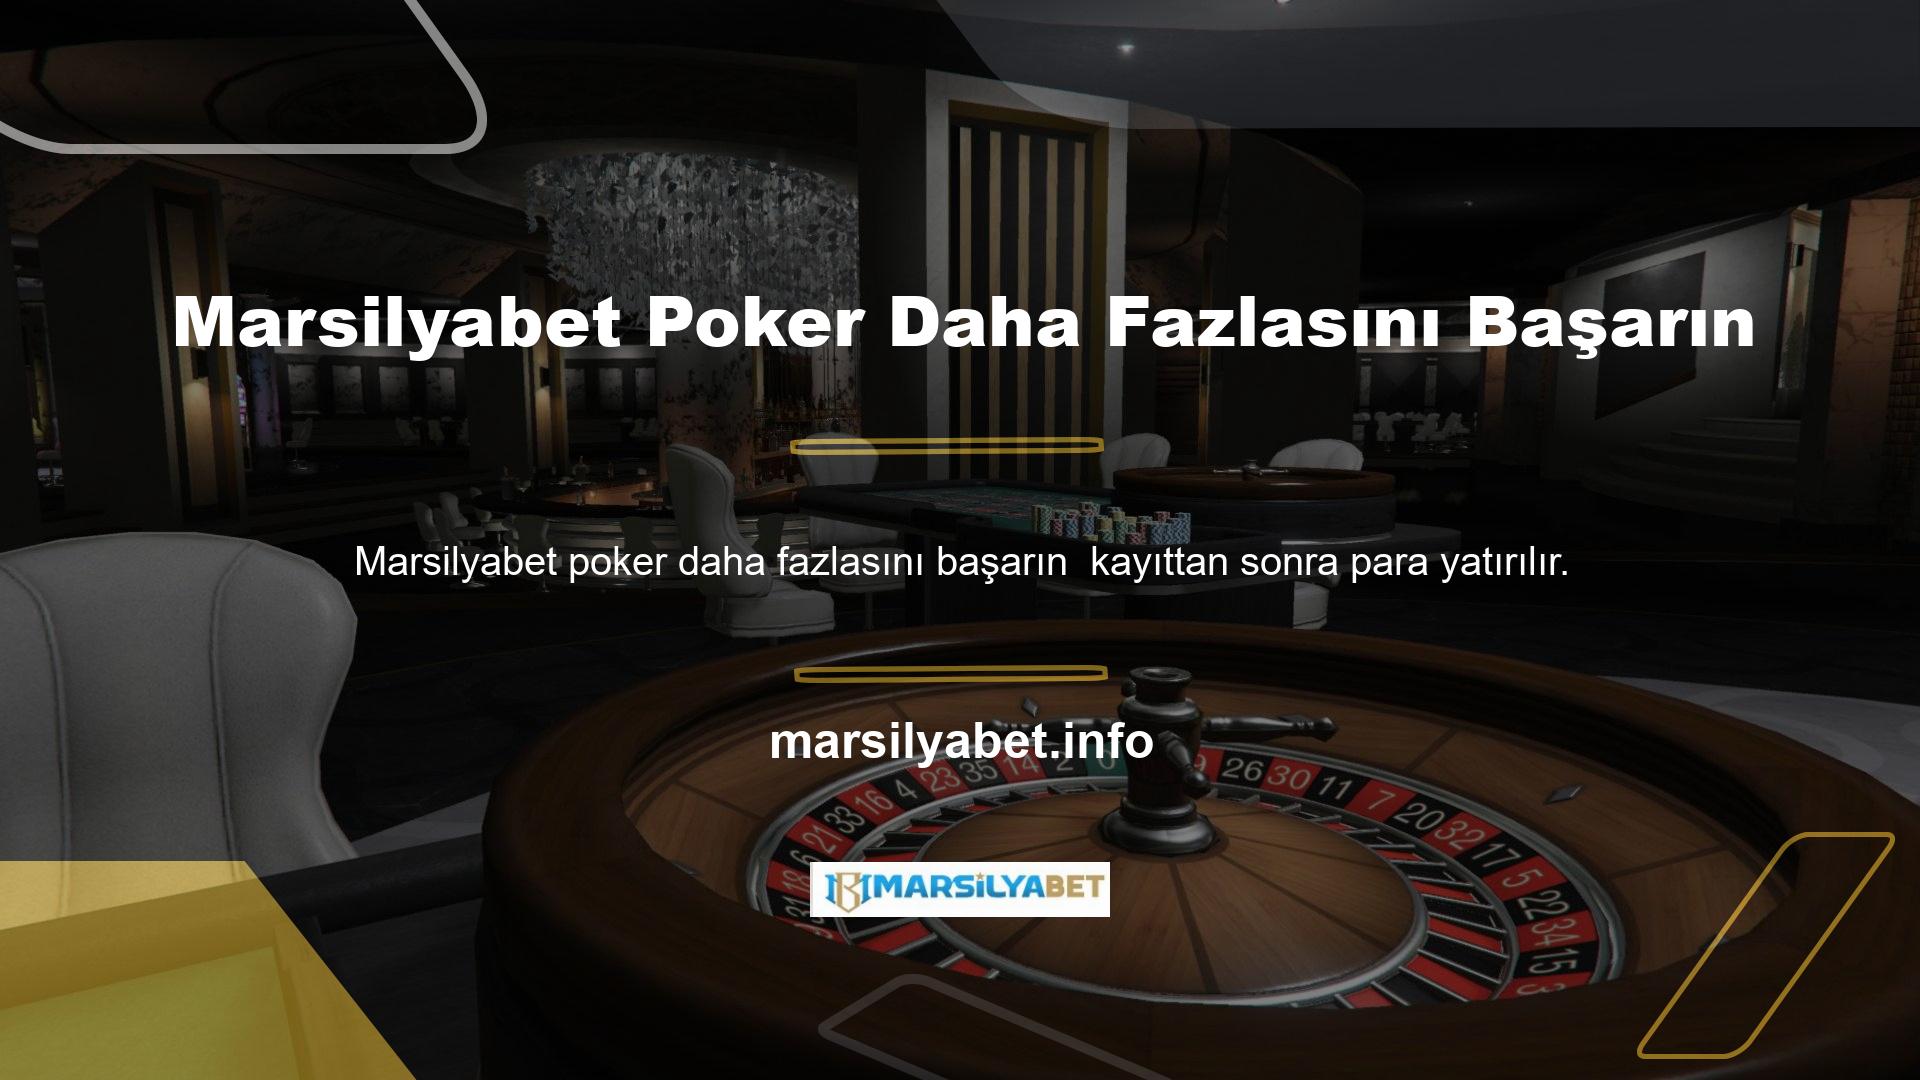 Bu site Marsilyabet Poker'de Kazanma Olasılığı için çeşitli seçenekler sunmaktadır